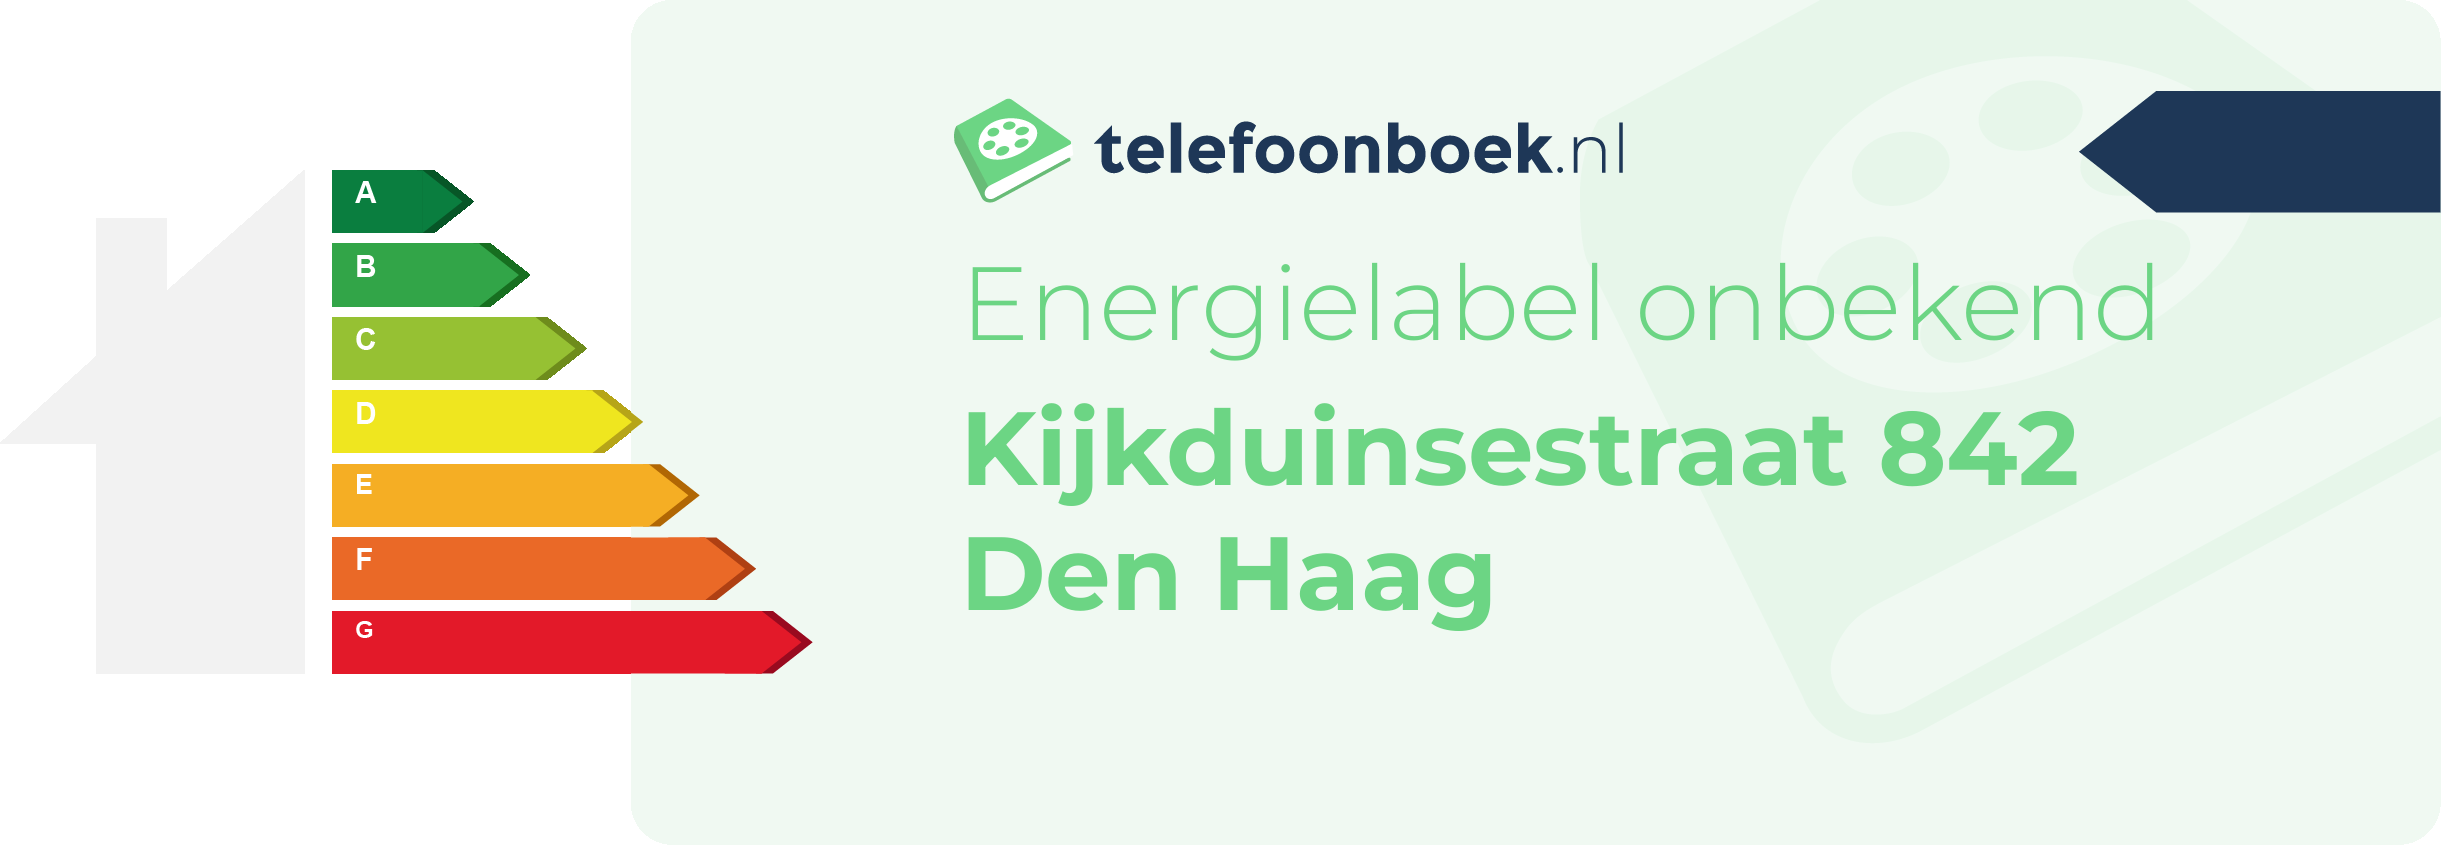 Energielabel Kijkduinsestraat 842 Den Haag